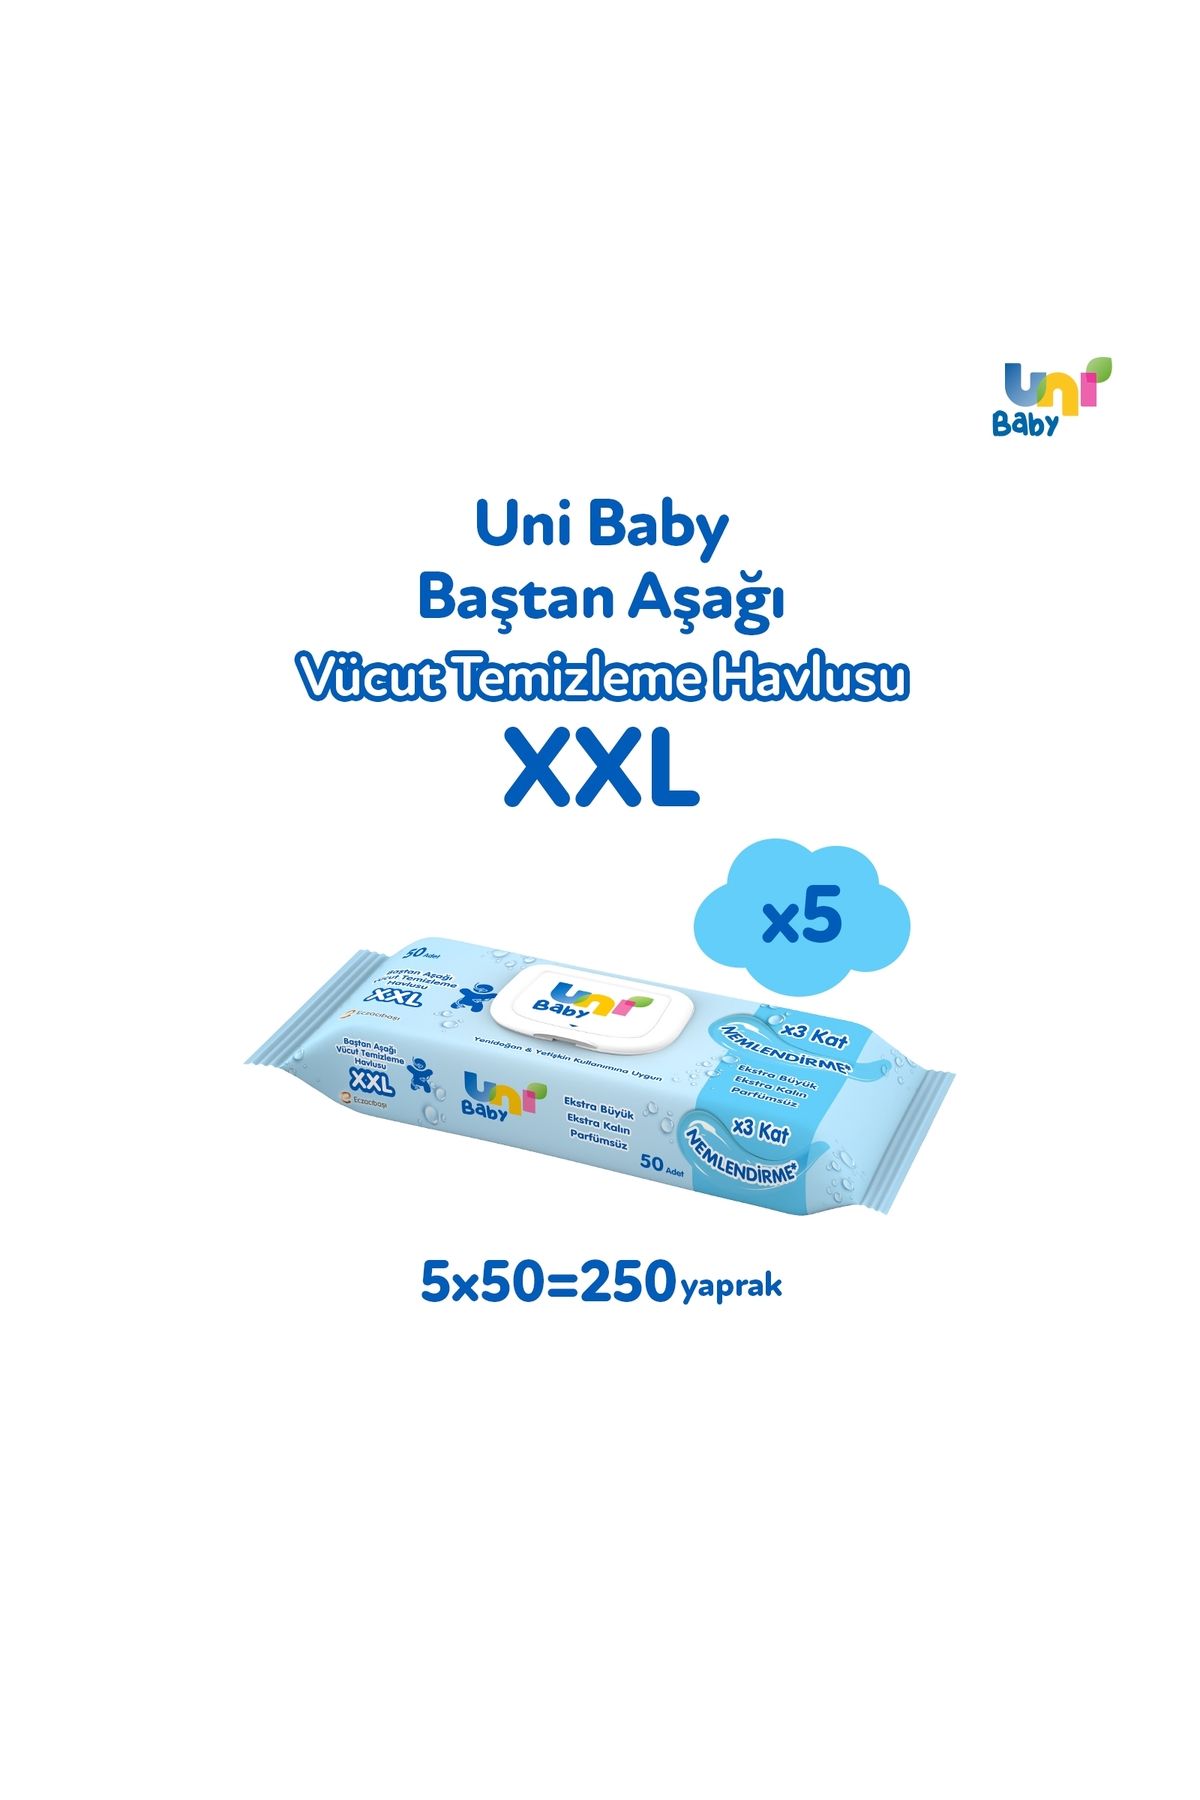 Uni Baby Vücut Temizleme Havlusu Xxl 5'li 250 Yaprak